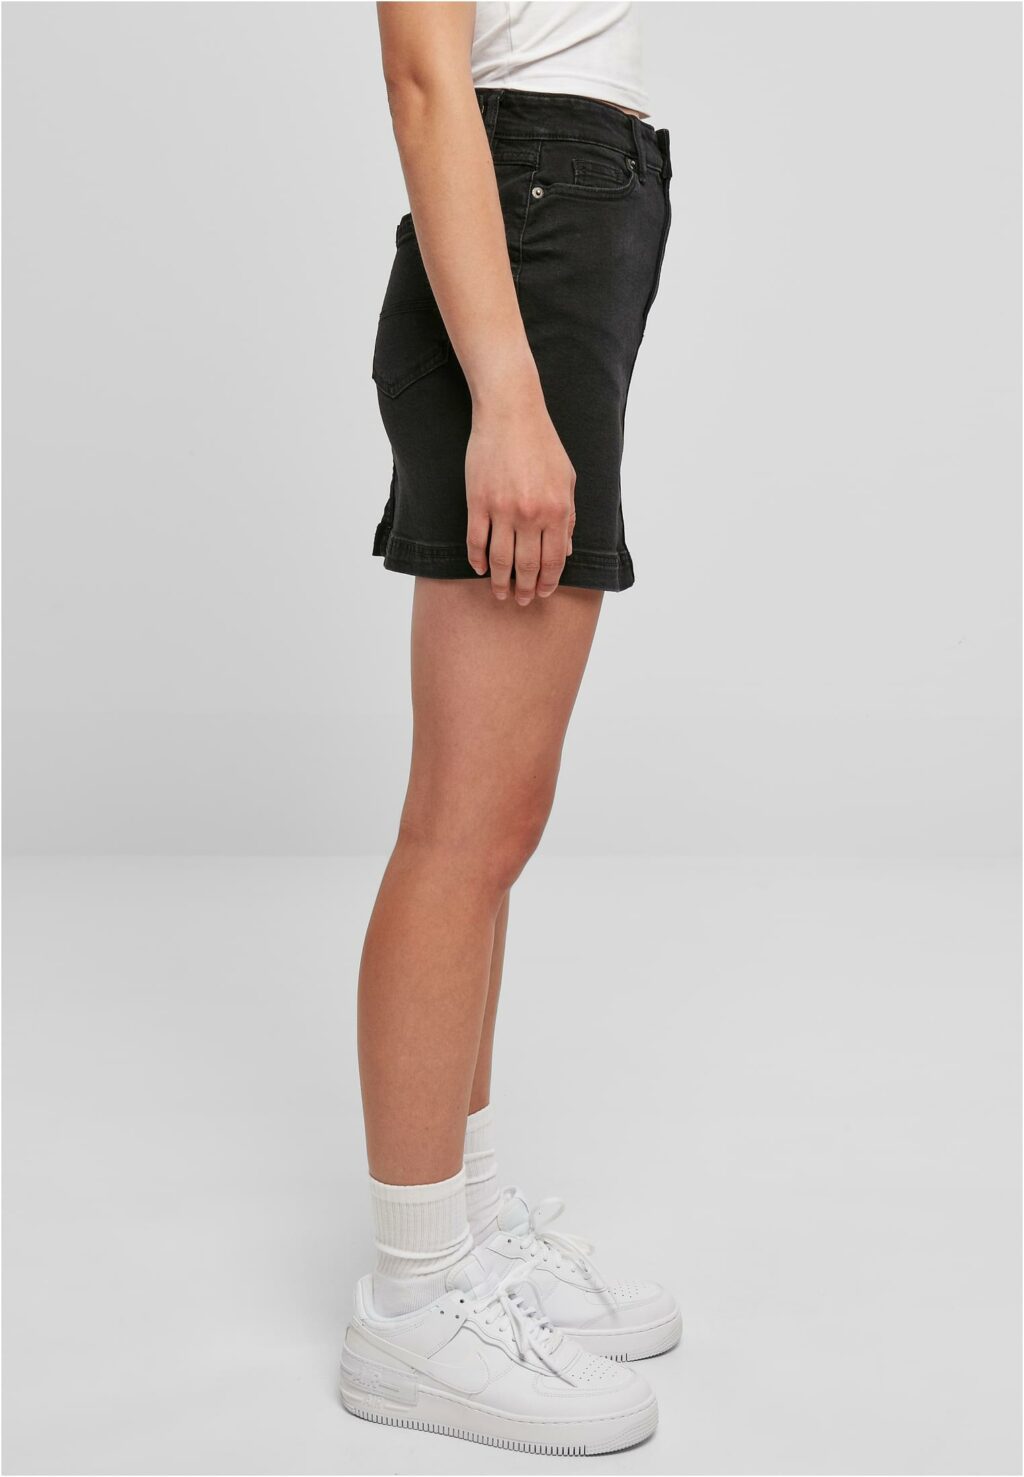 Urban Classics Ladies Organic Stretch Denim Mini Skirt black washed TB4799